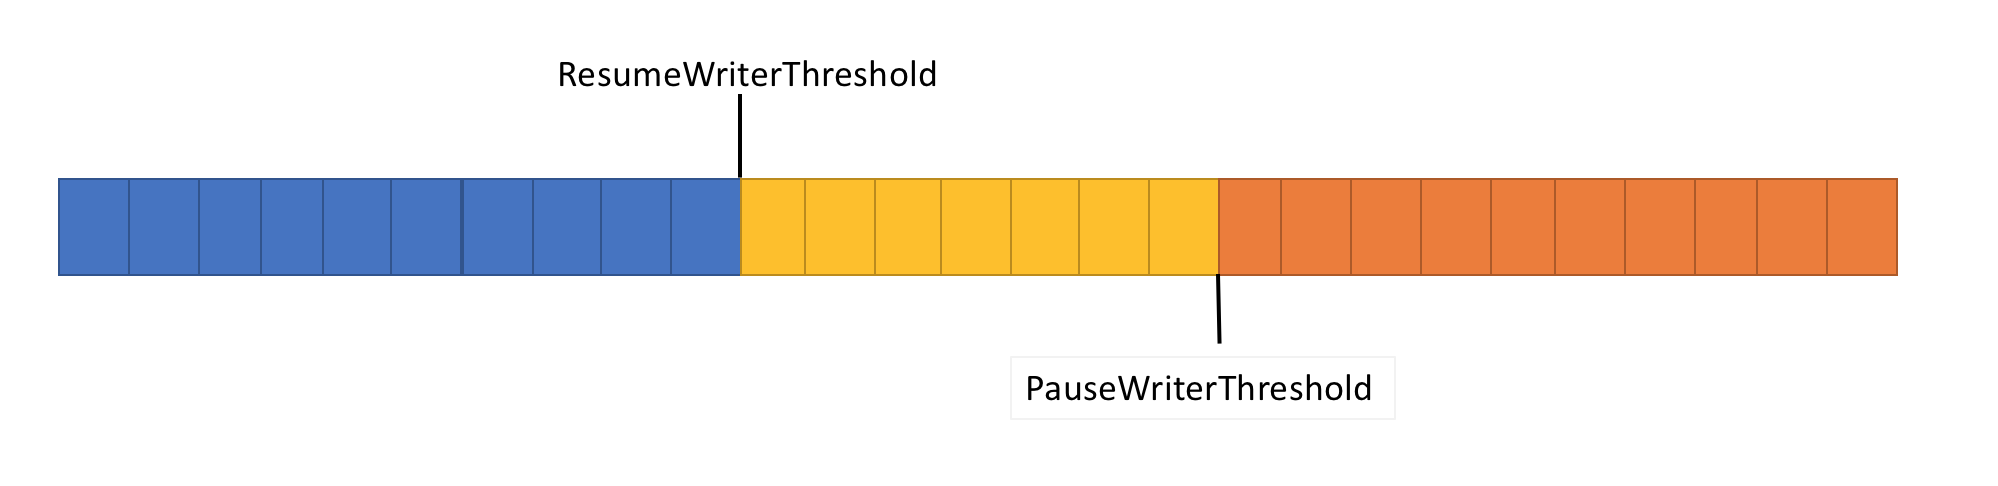 具有 ResumeWriterThreshold 和 PauseWriterThreshold 的图